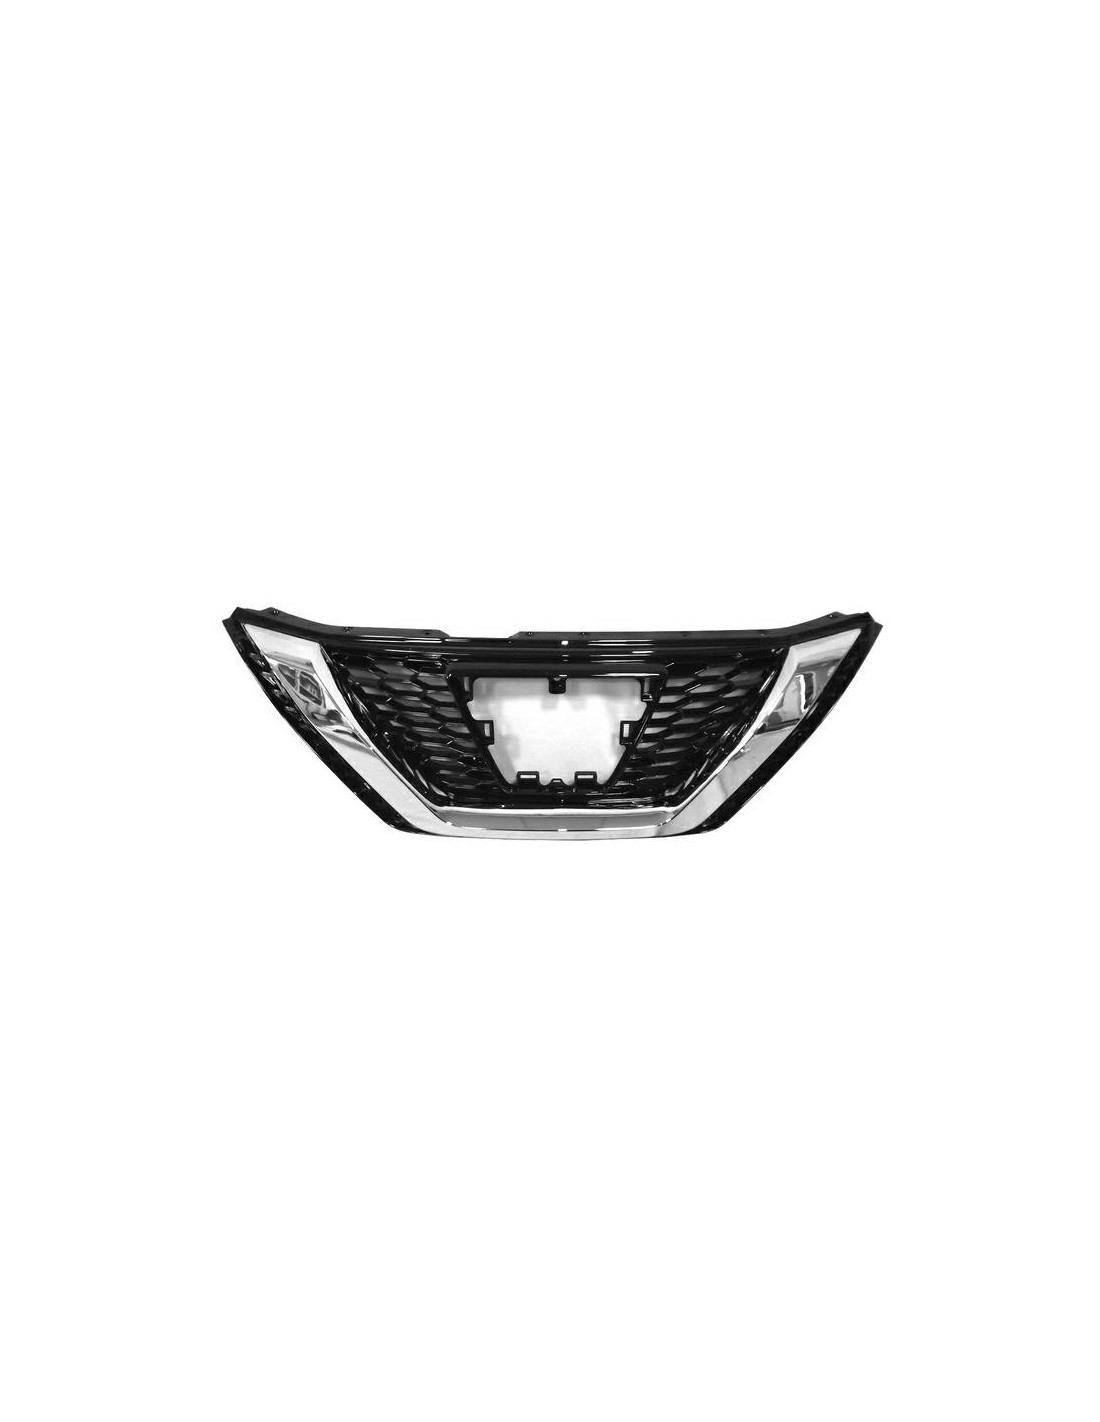 Mascherina Griglia anteriore Cromata E Nera Lucida per Nissan Qashq